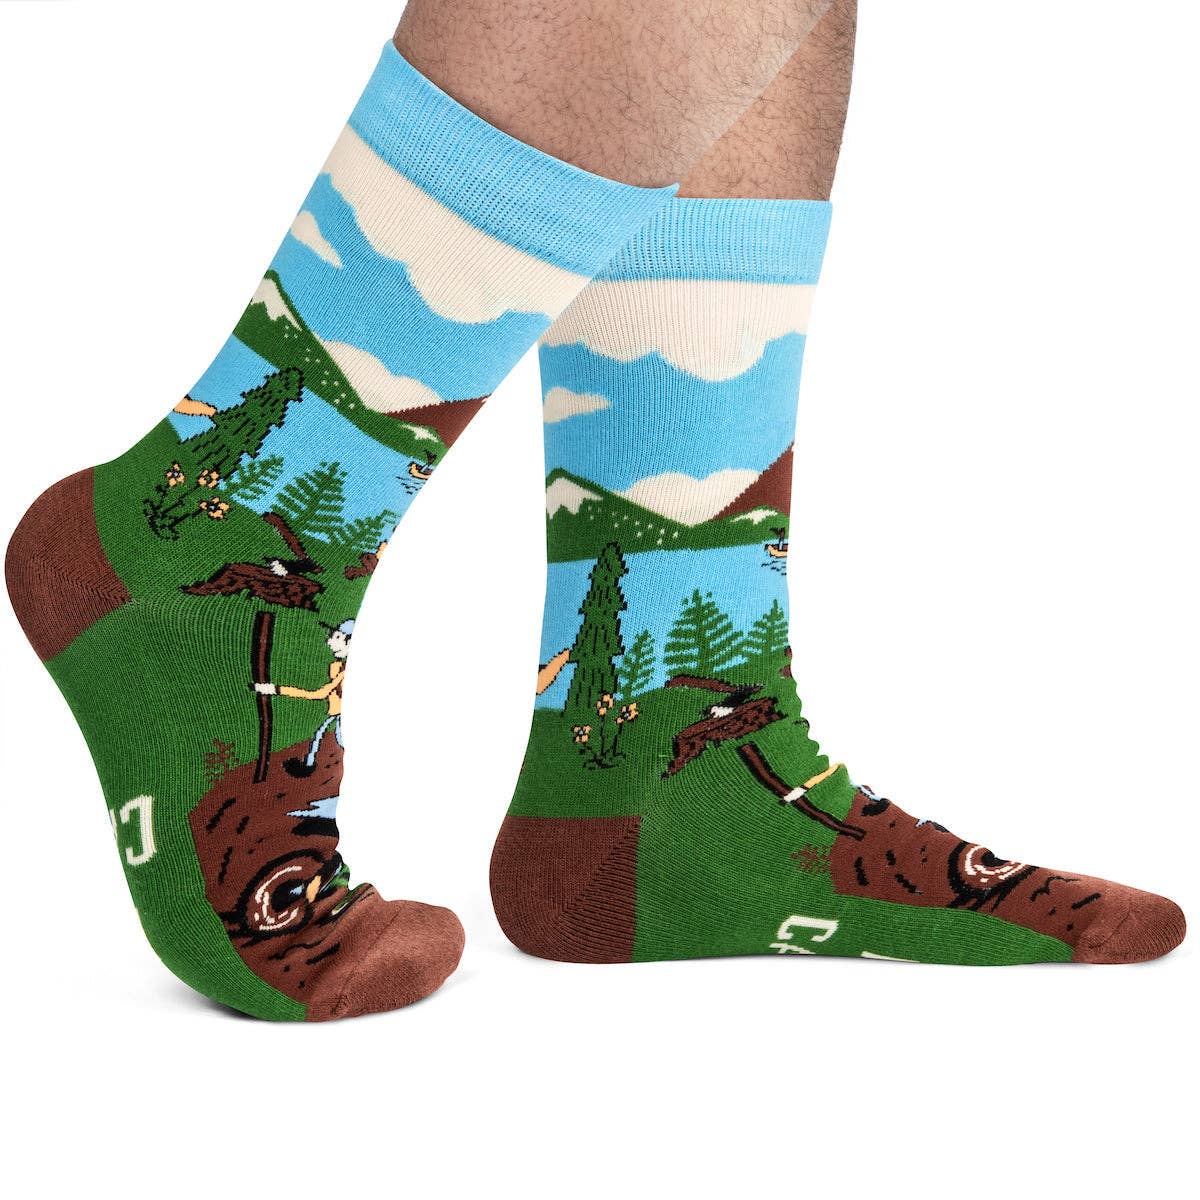 Lavley - Happy Camper Socks